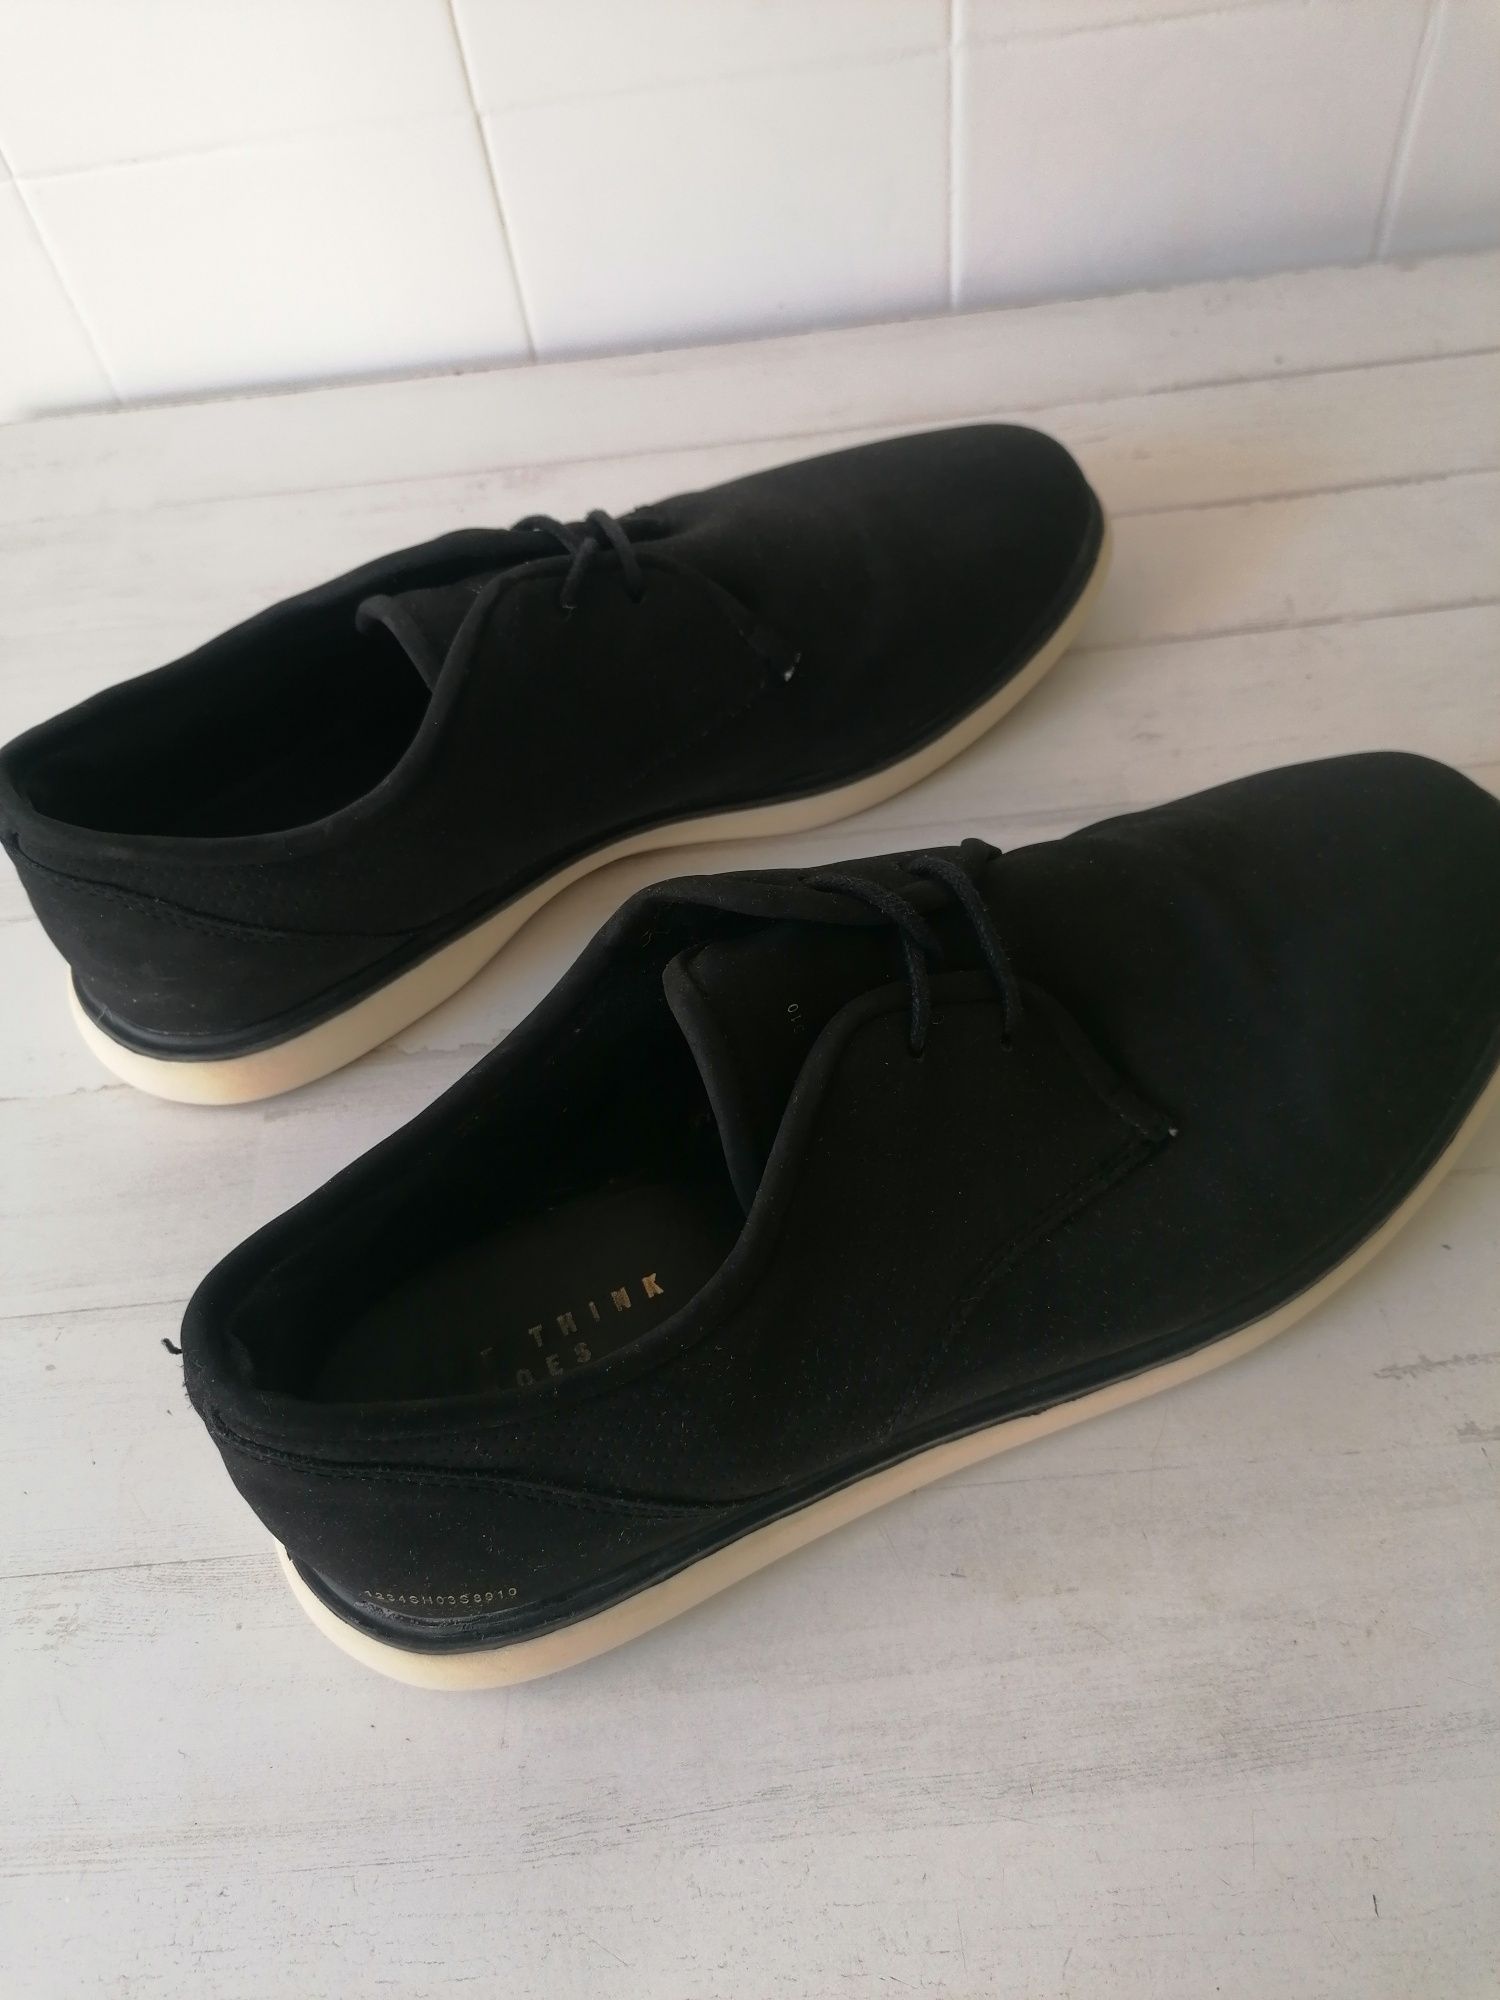 Sapatos Pretos Bershka - Tamanho 42 - Como Novos